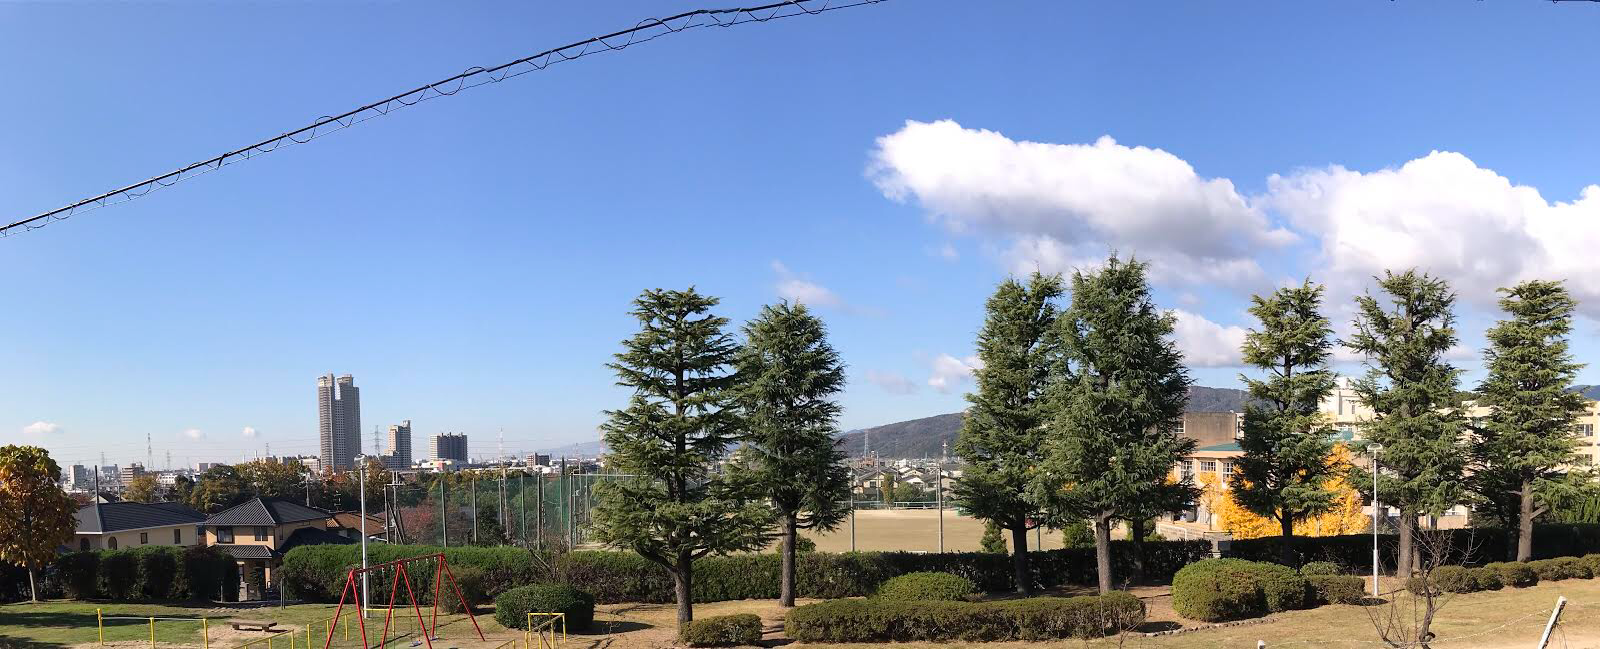 今日は 良い天気ですね！八幡靴工房からの景色もスッキリ！